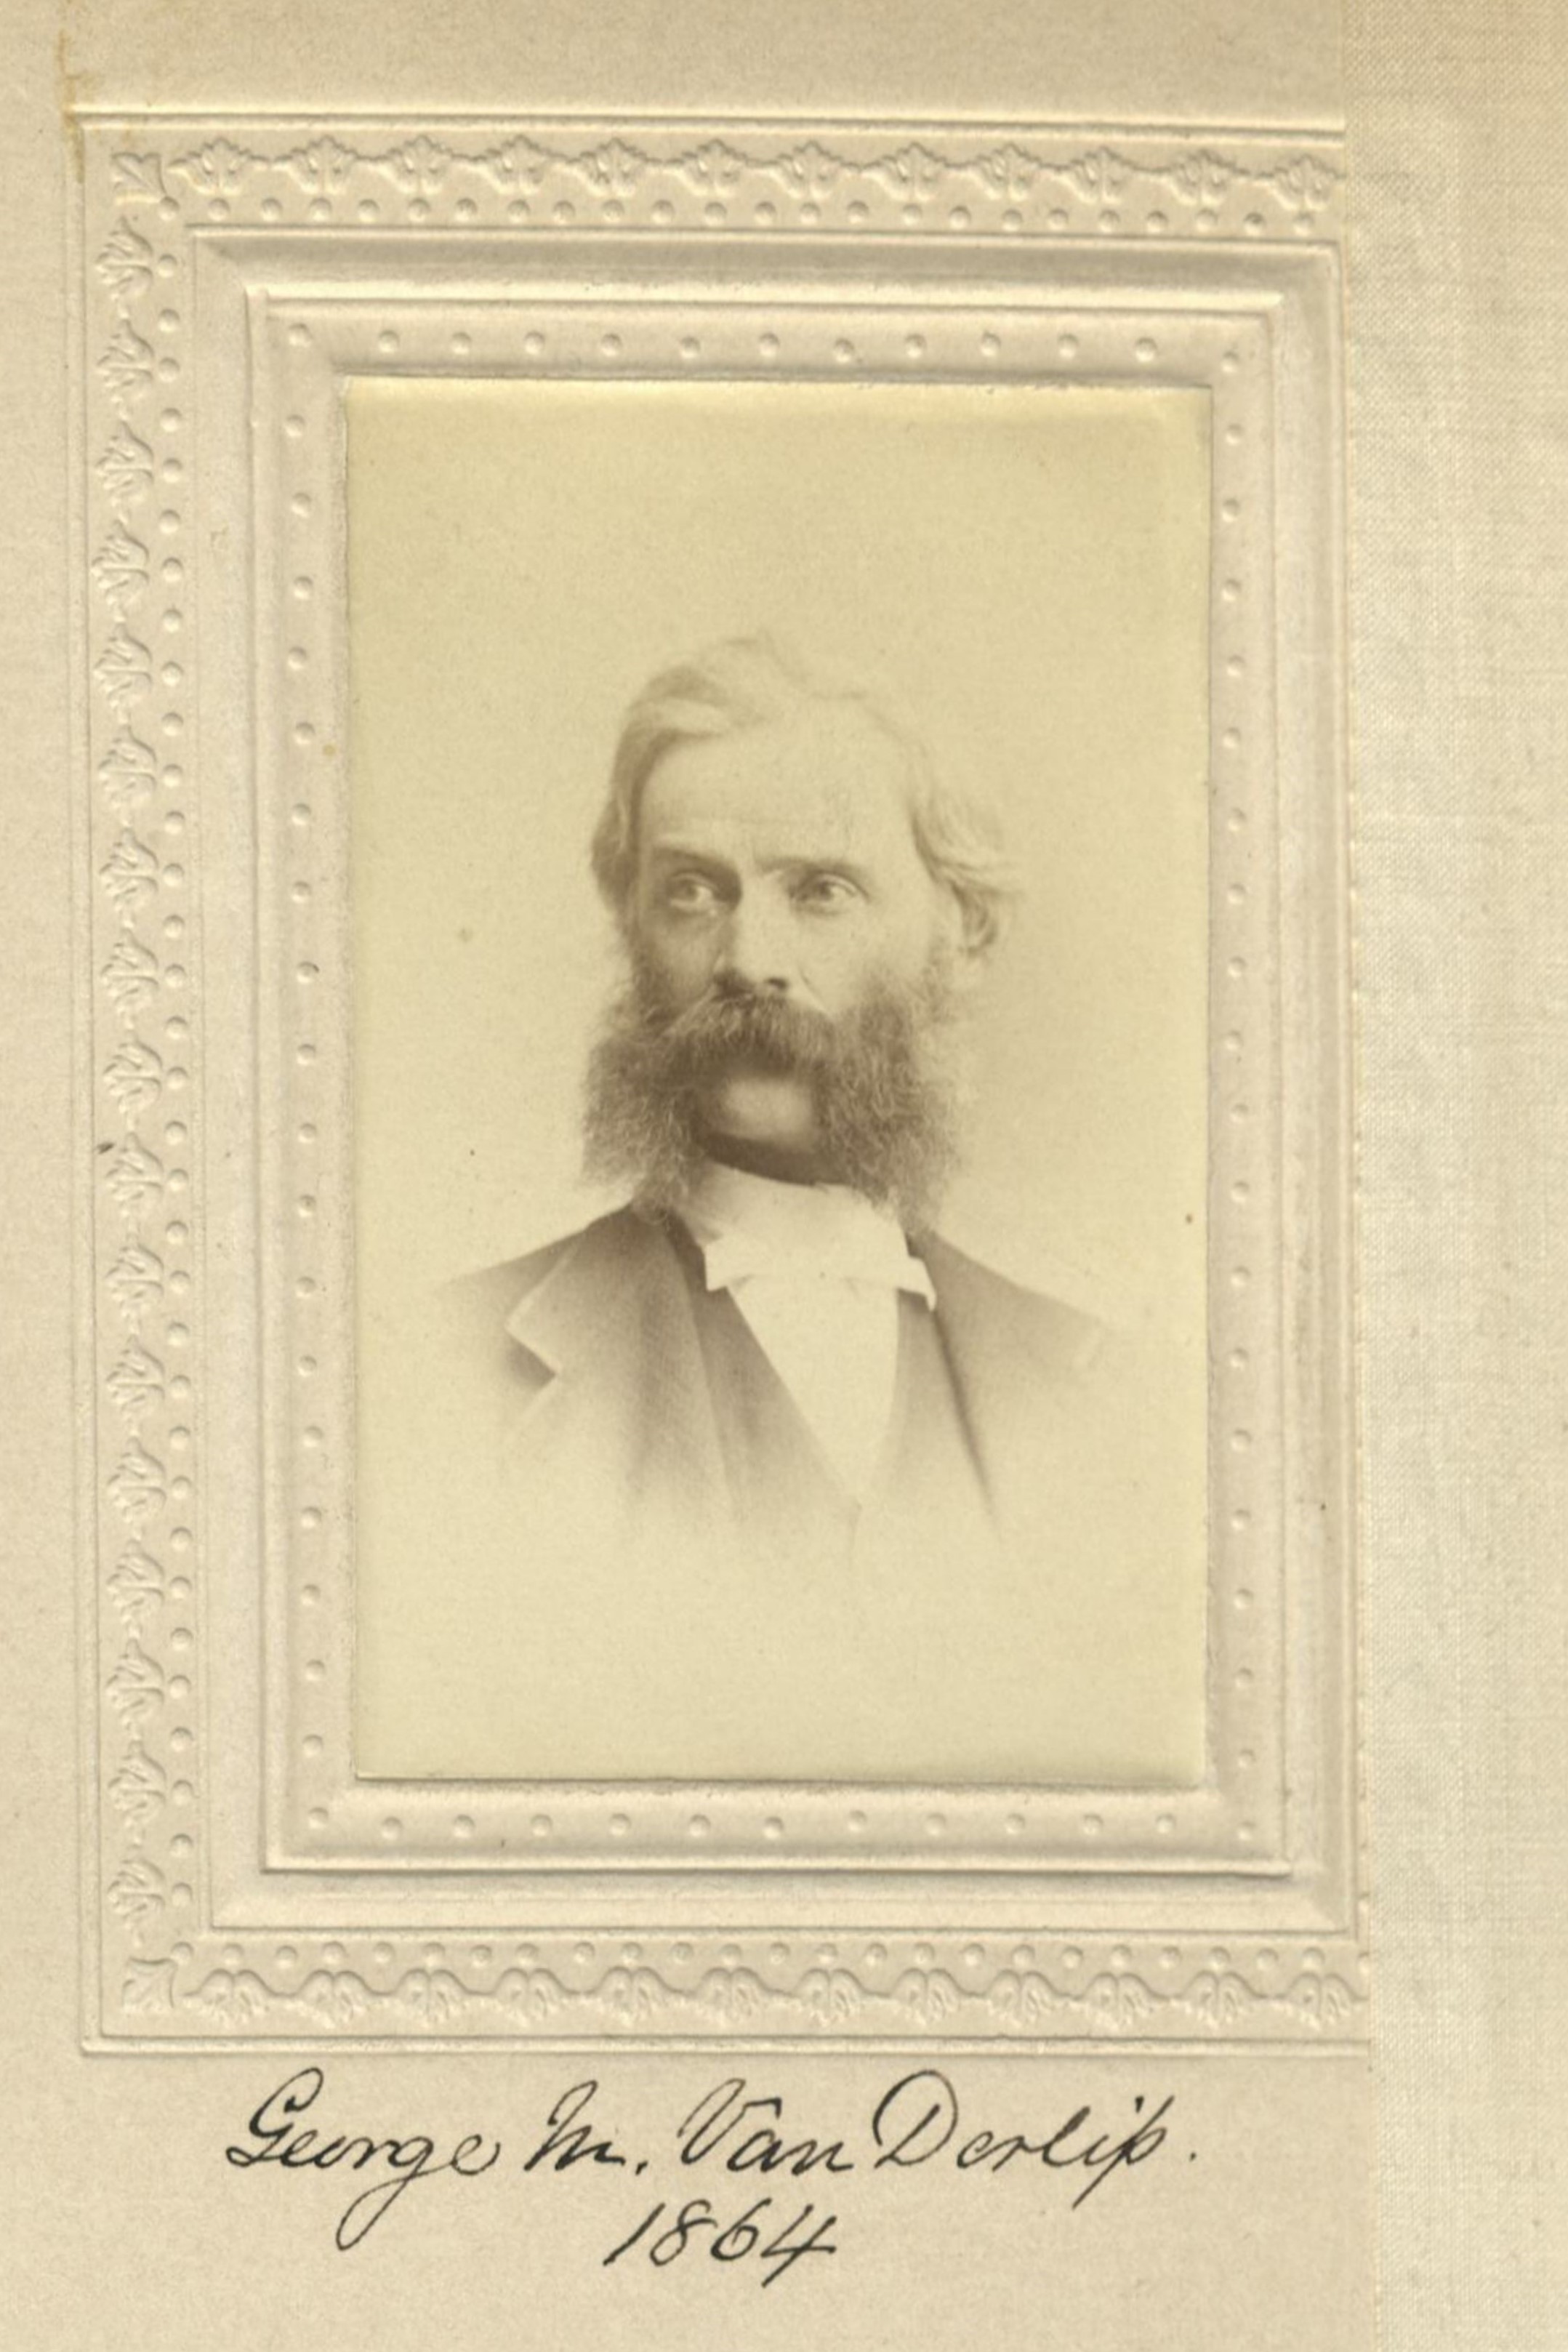 Member portrait of George M. Vanderlip